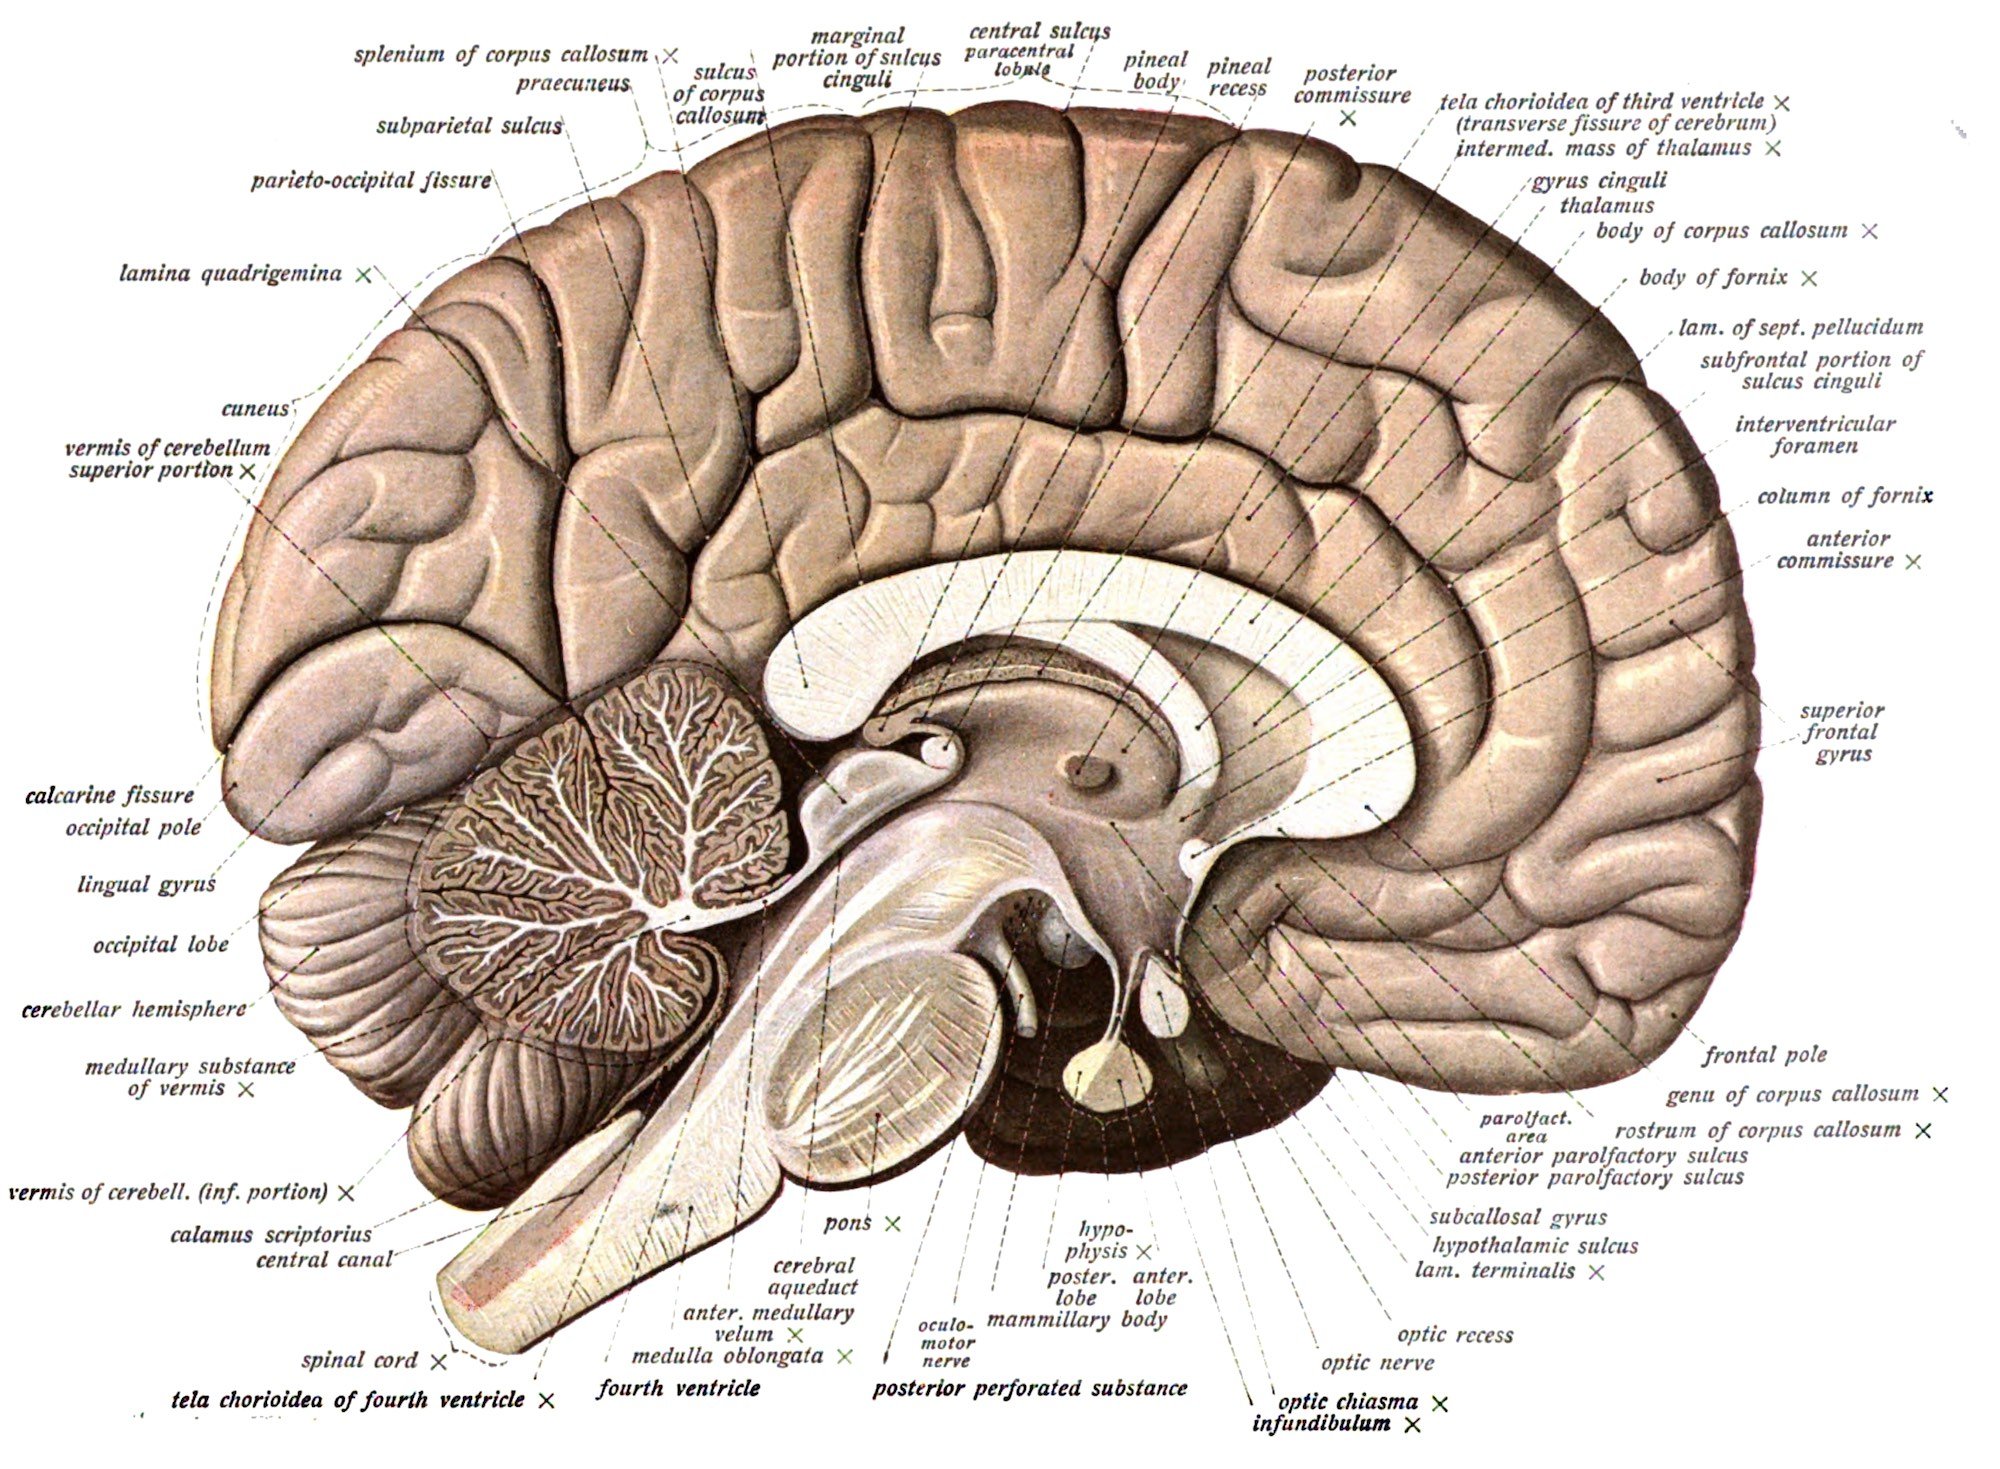 Przekrój wzdłuż mózgu. Uwidocznione struktury u dołu należą do układu limbicznego, który ulega uszkodzeniu podczas niedoboru tiaminy.